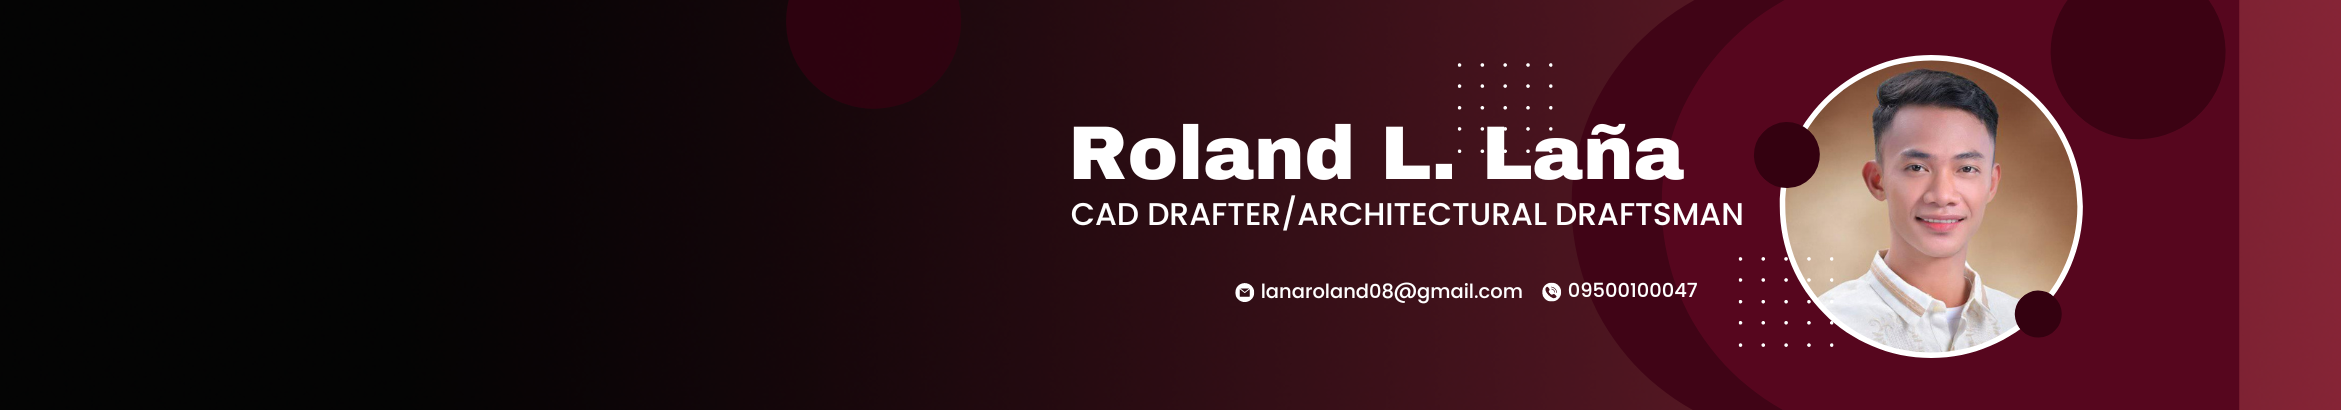 Roland L. Laña's profile banner